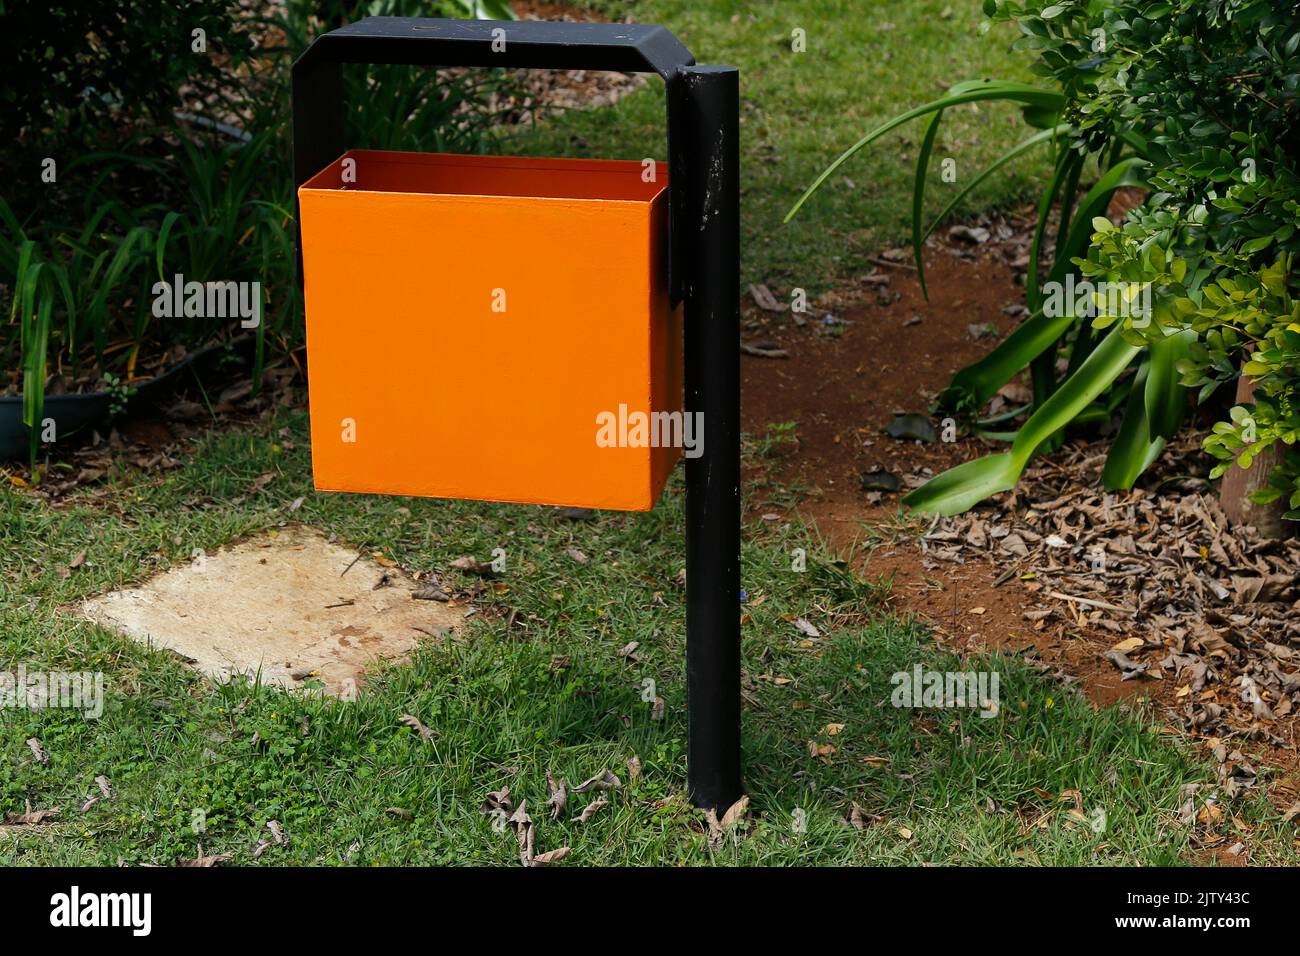 Orangefarbener Metallabfallbehälter im grünen und begrünten öffentlichen Bereich - Müllabfuhr Stockfoto